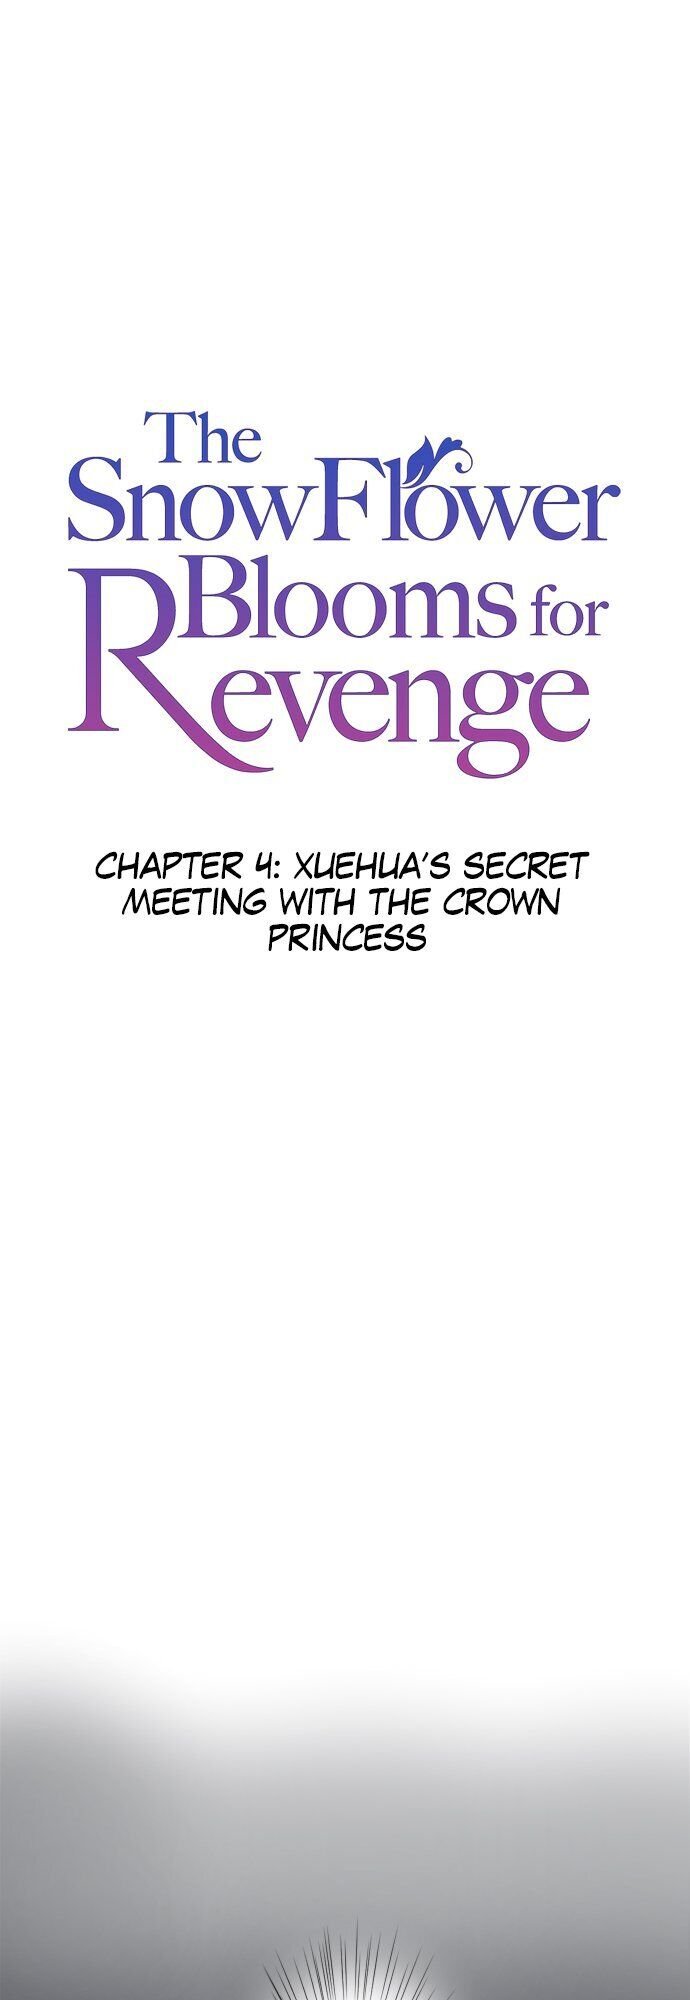 The Snowflower Blooms for Revenge chapter 4